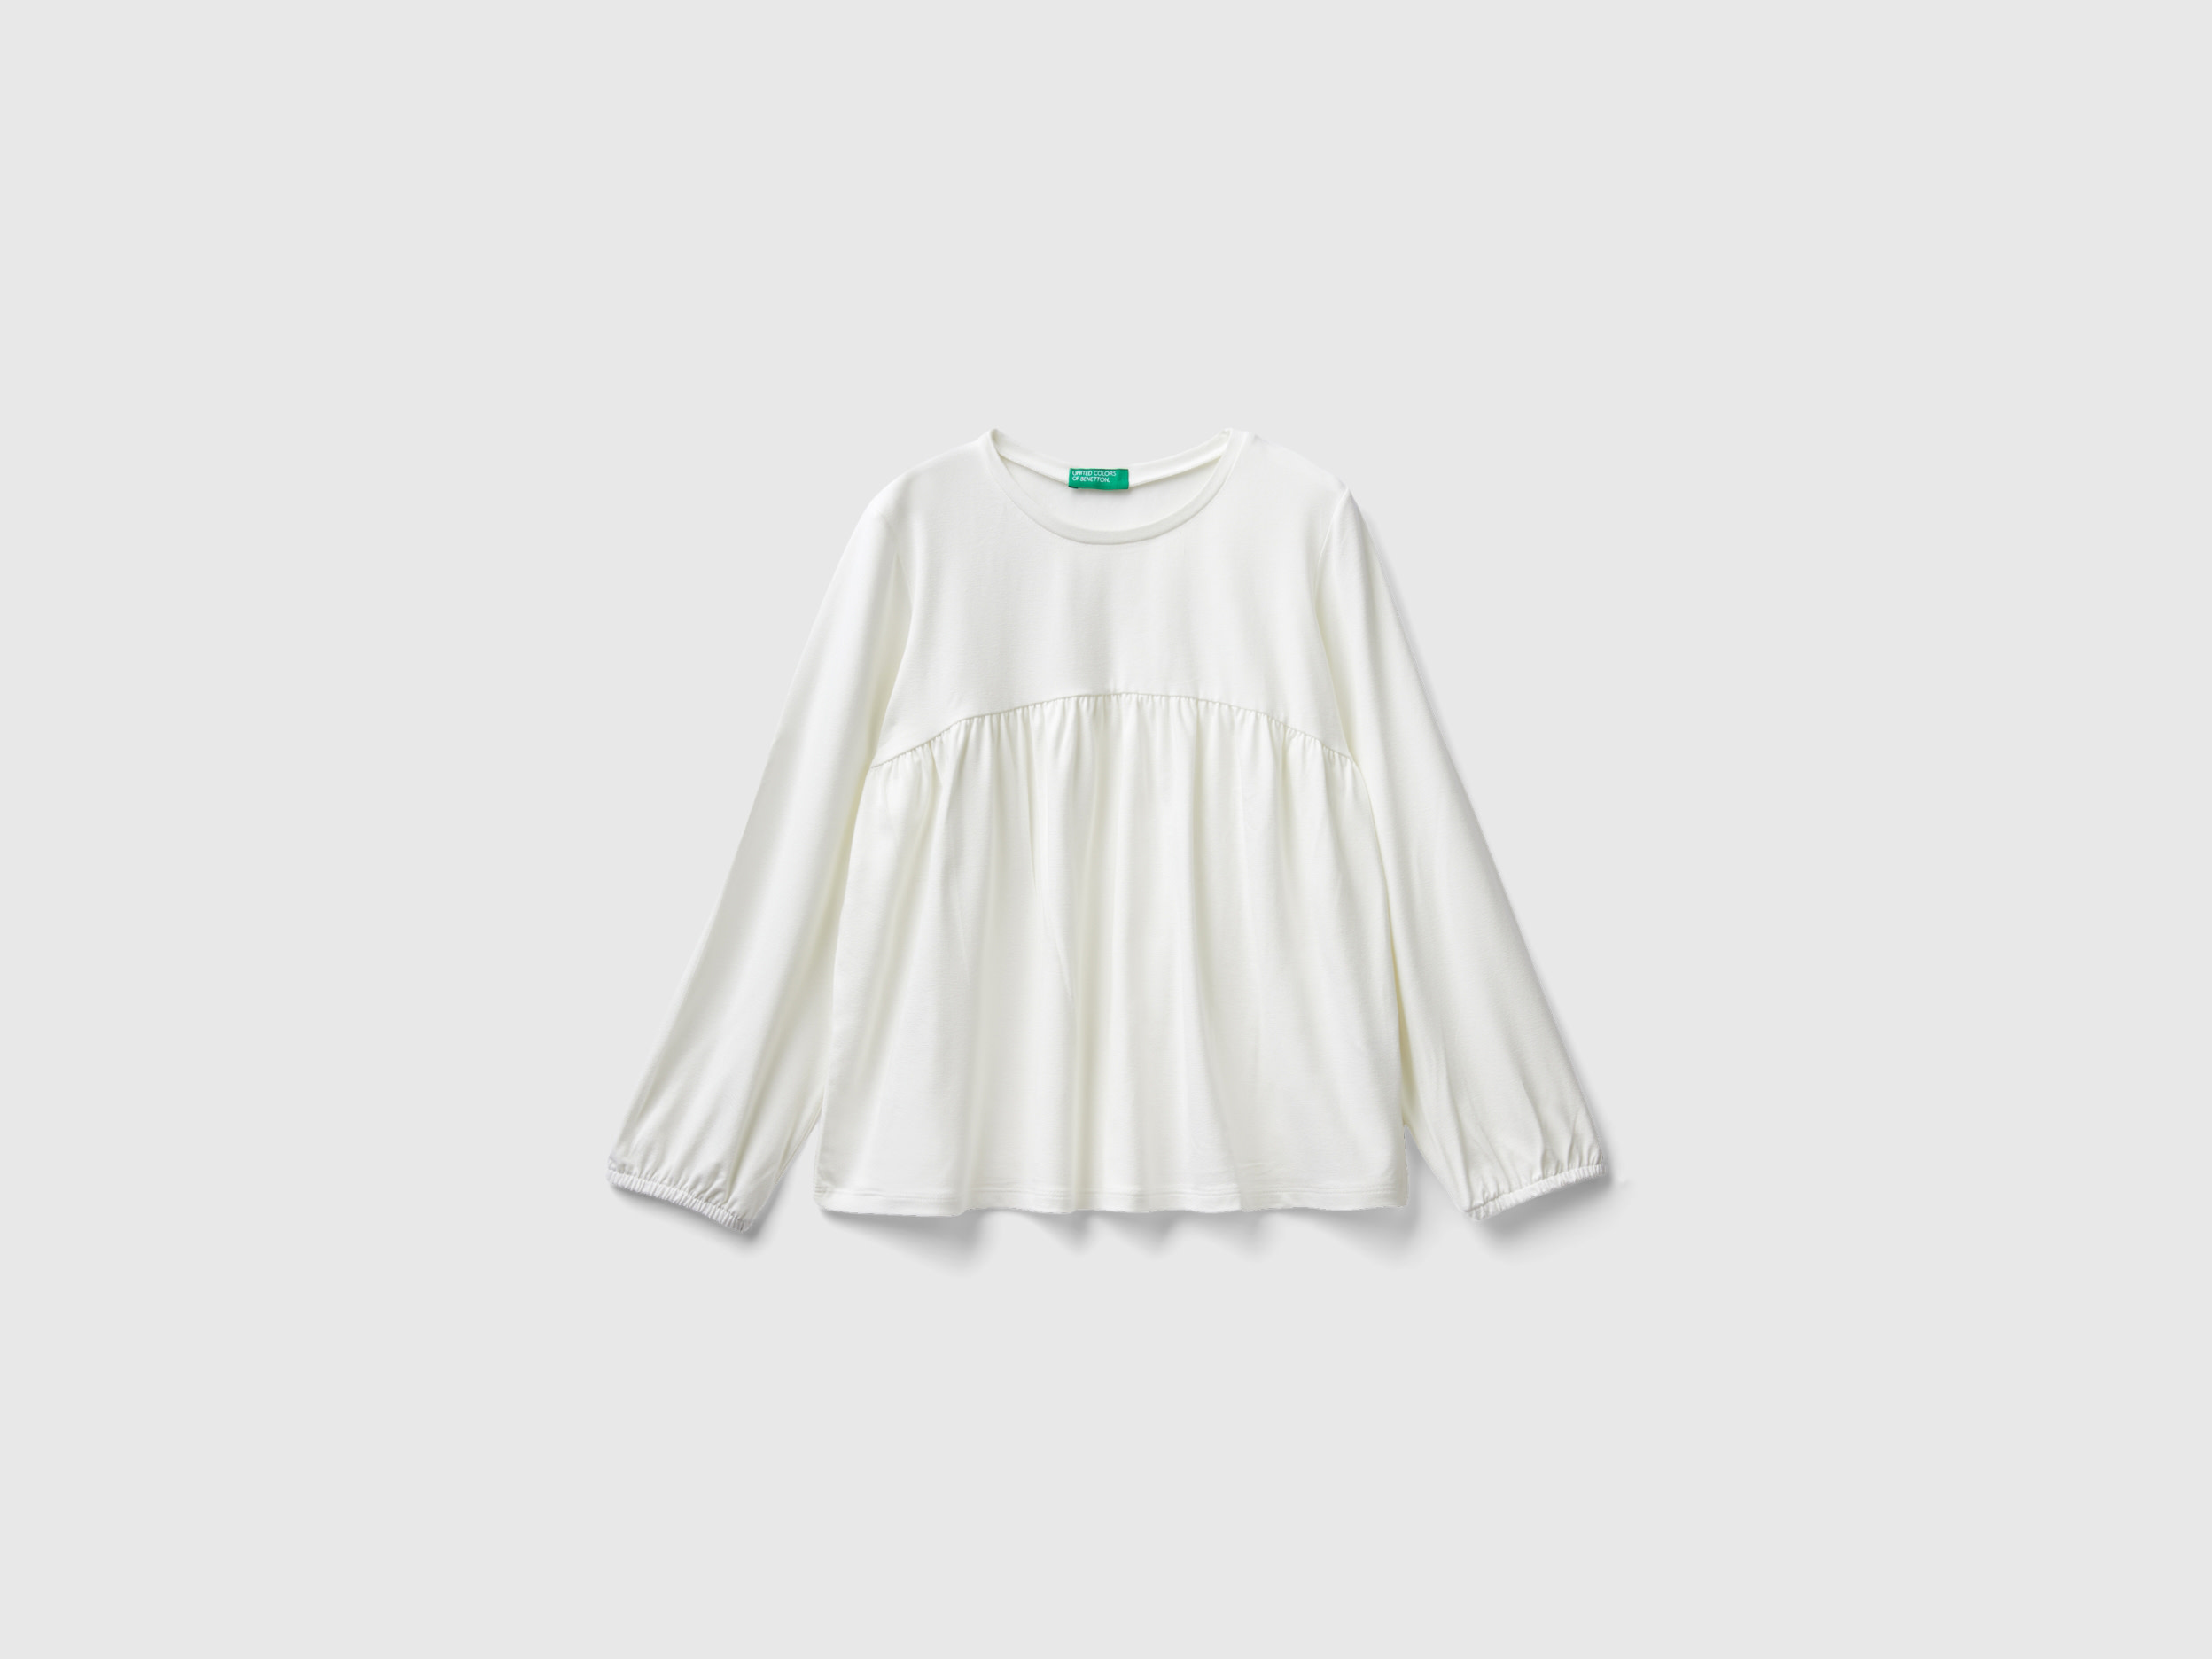 Benetton, Flowy Stretch T-shirt, size 2XL, Creamy White, Kids